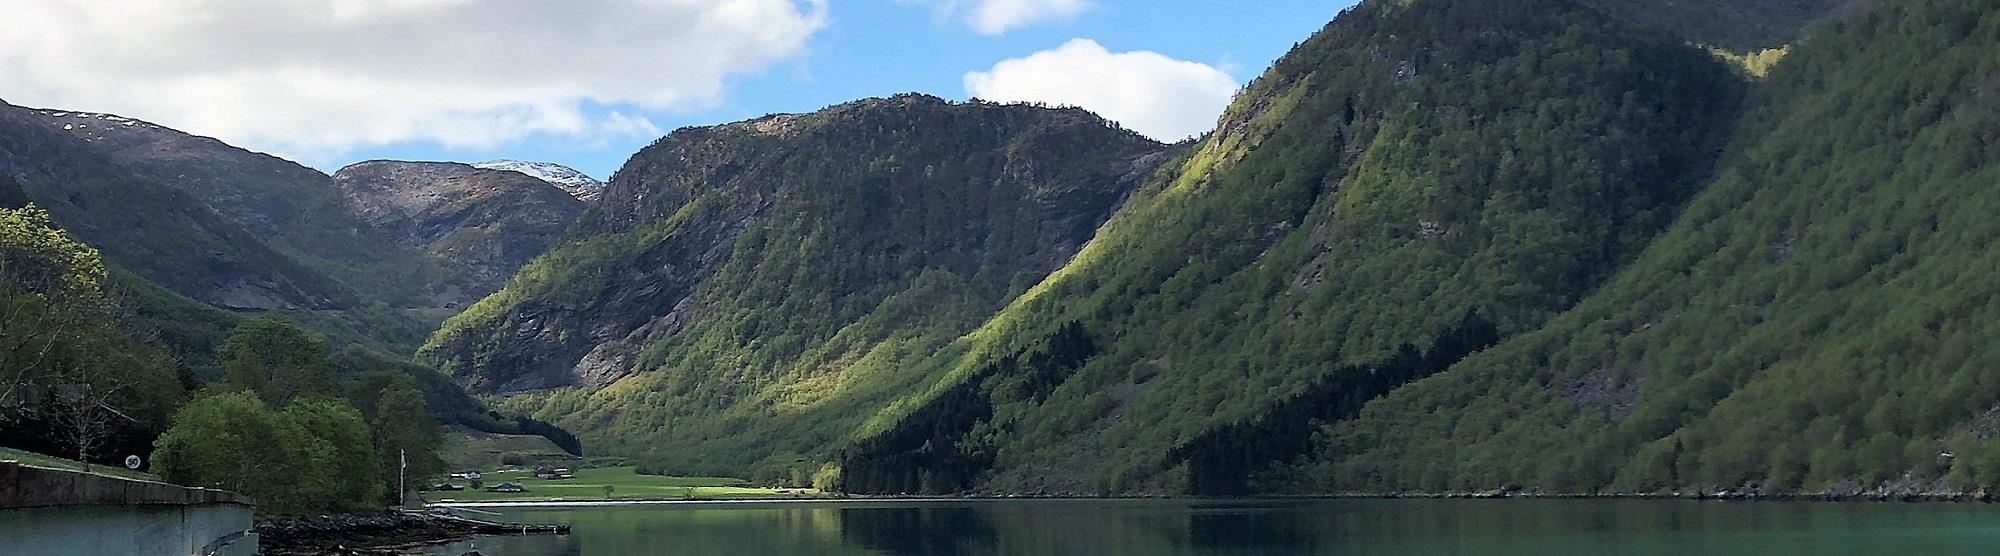 Fjorden utenfor allfarvei